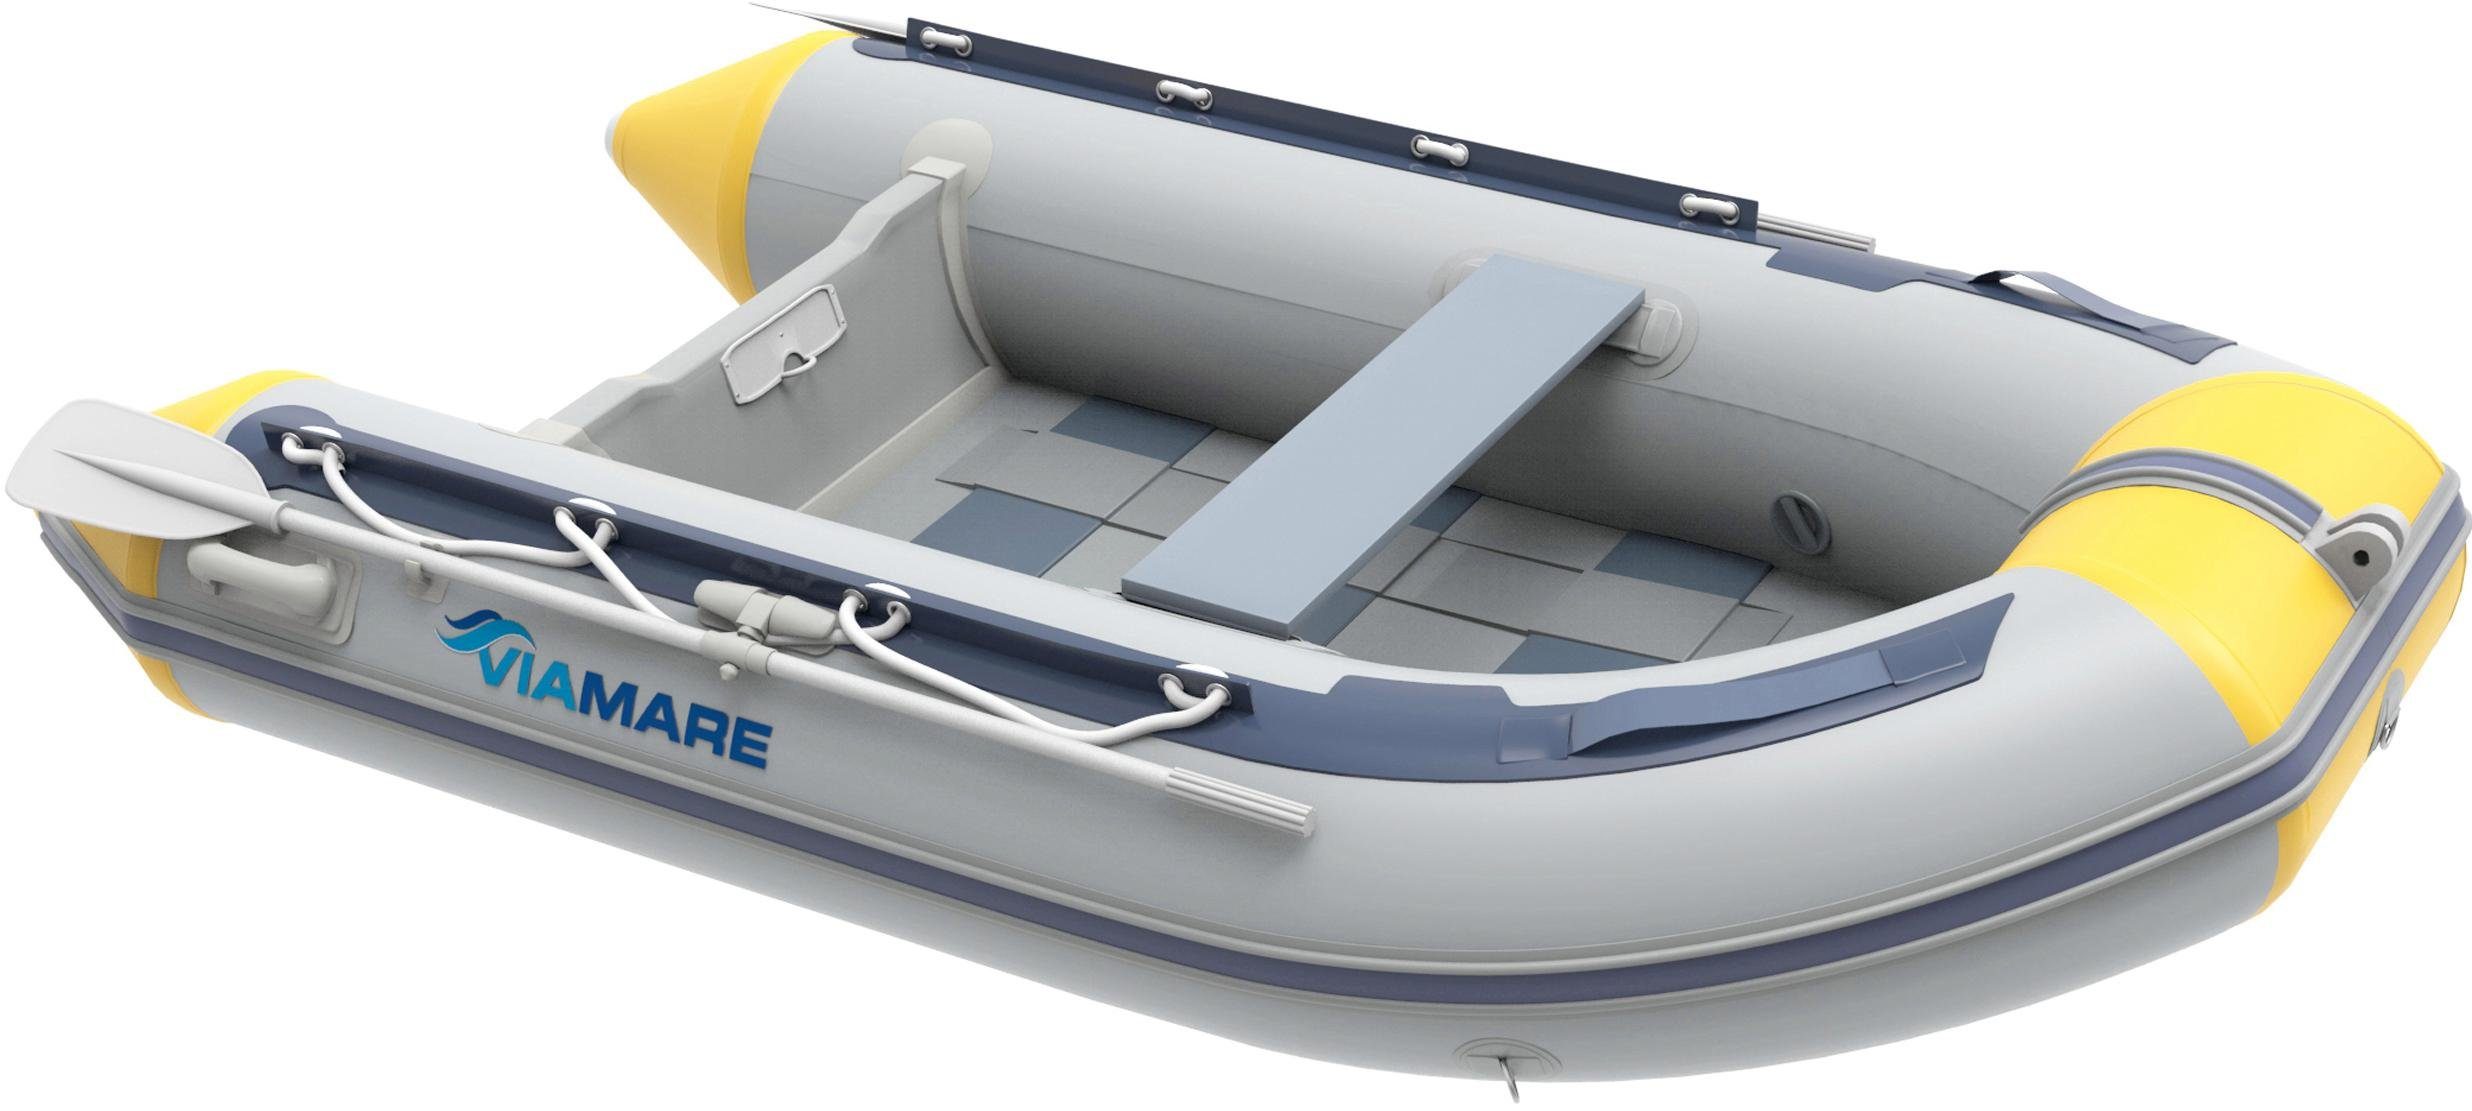 VIAMARE Schlauchboot 230 S Slat, Zügiger Auf- und Abbau online kaufen | OTTO